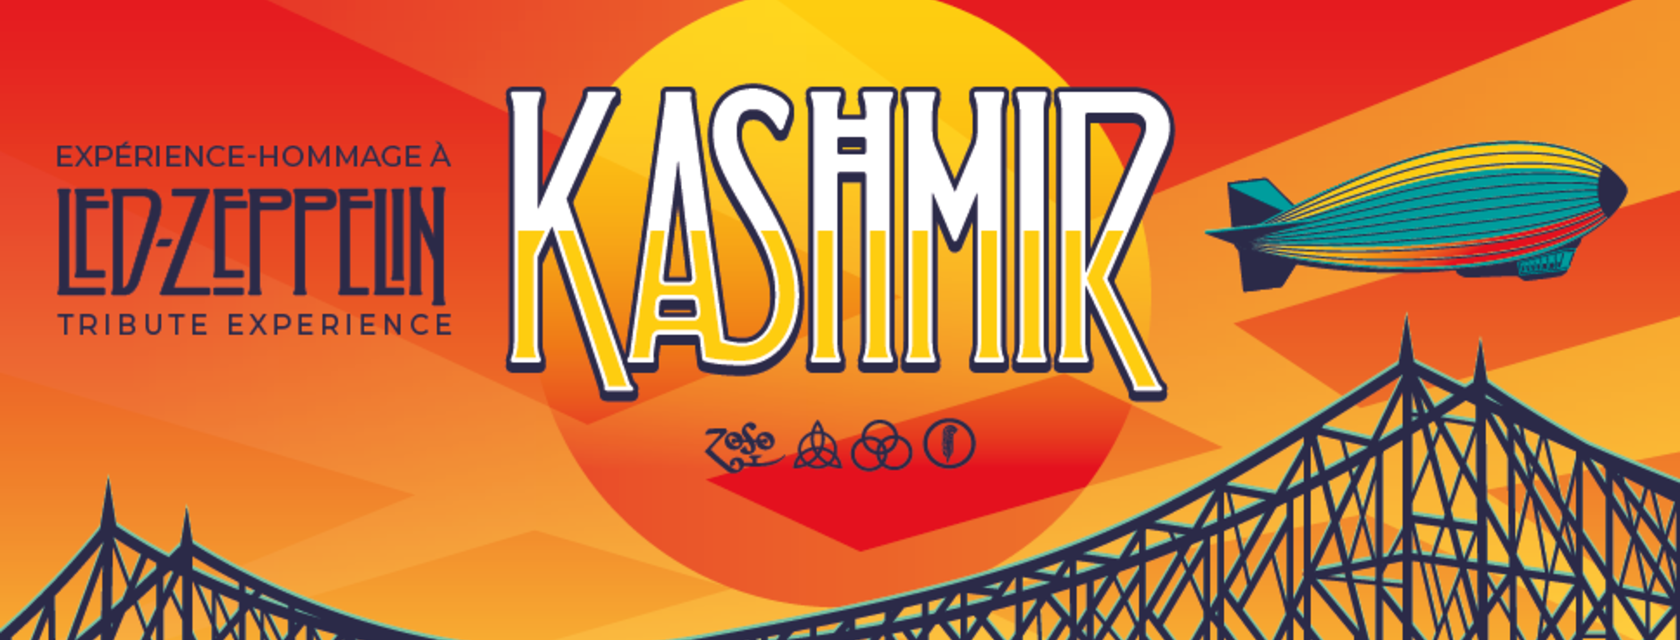 Kashmir Experience-Tribute to Led Zeppelin at the Cabaret de l'Amphithéâtre Cogeco